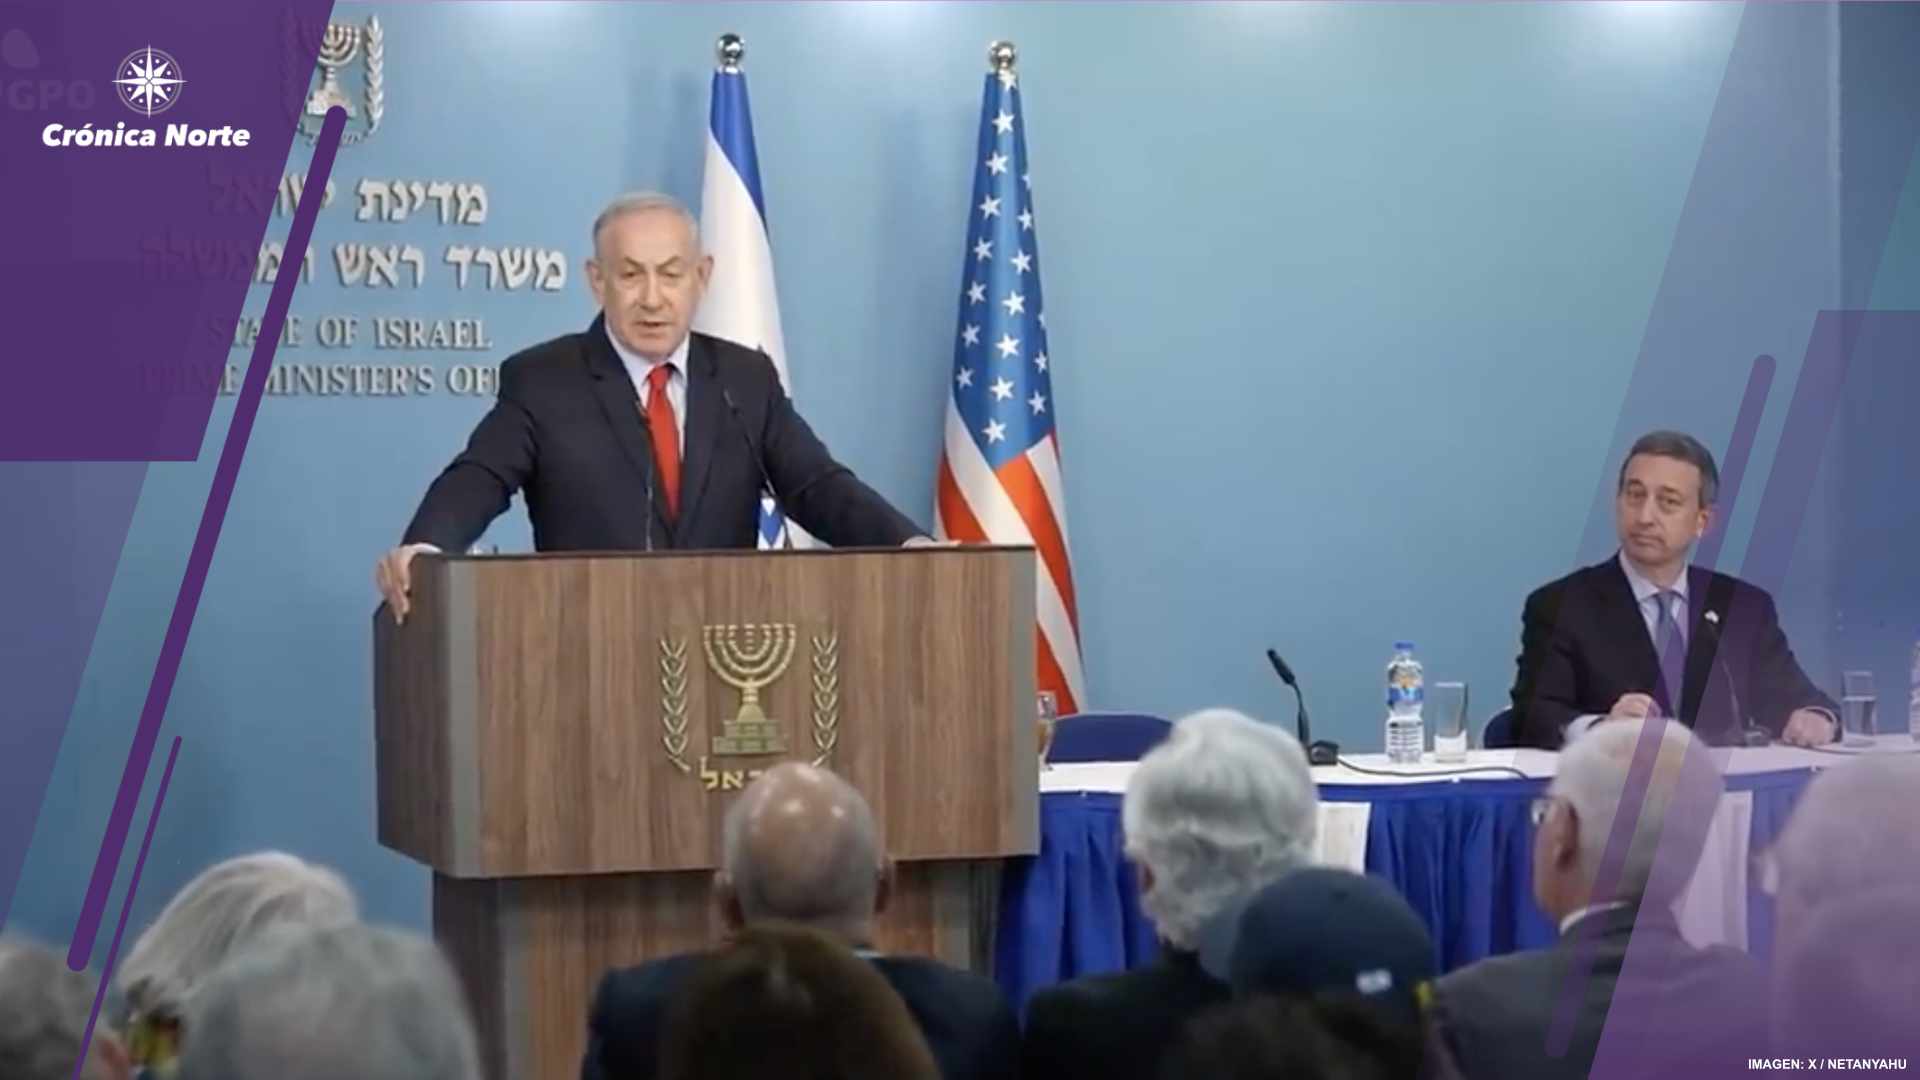 “Israel lanzará ofensiva con o sin apoyo de EU”: Netanyahu